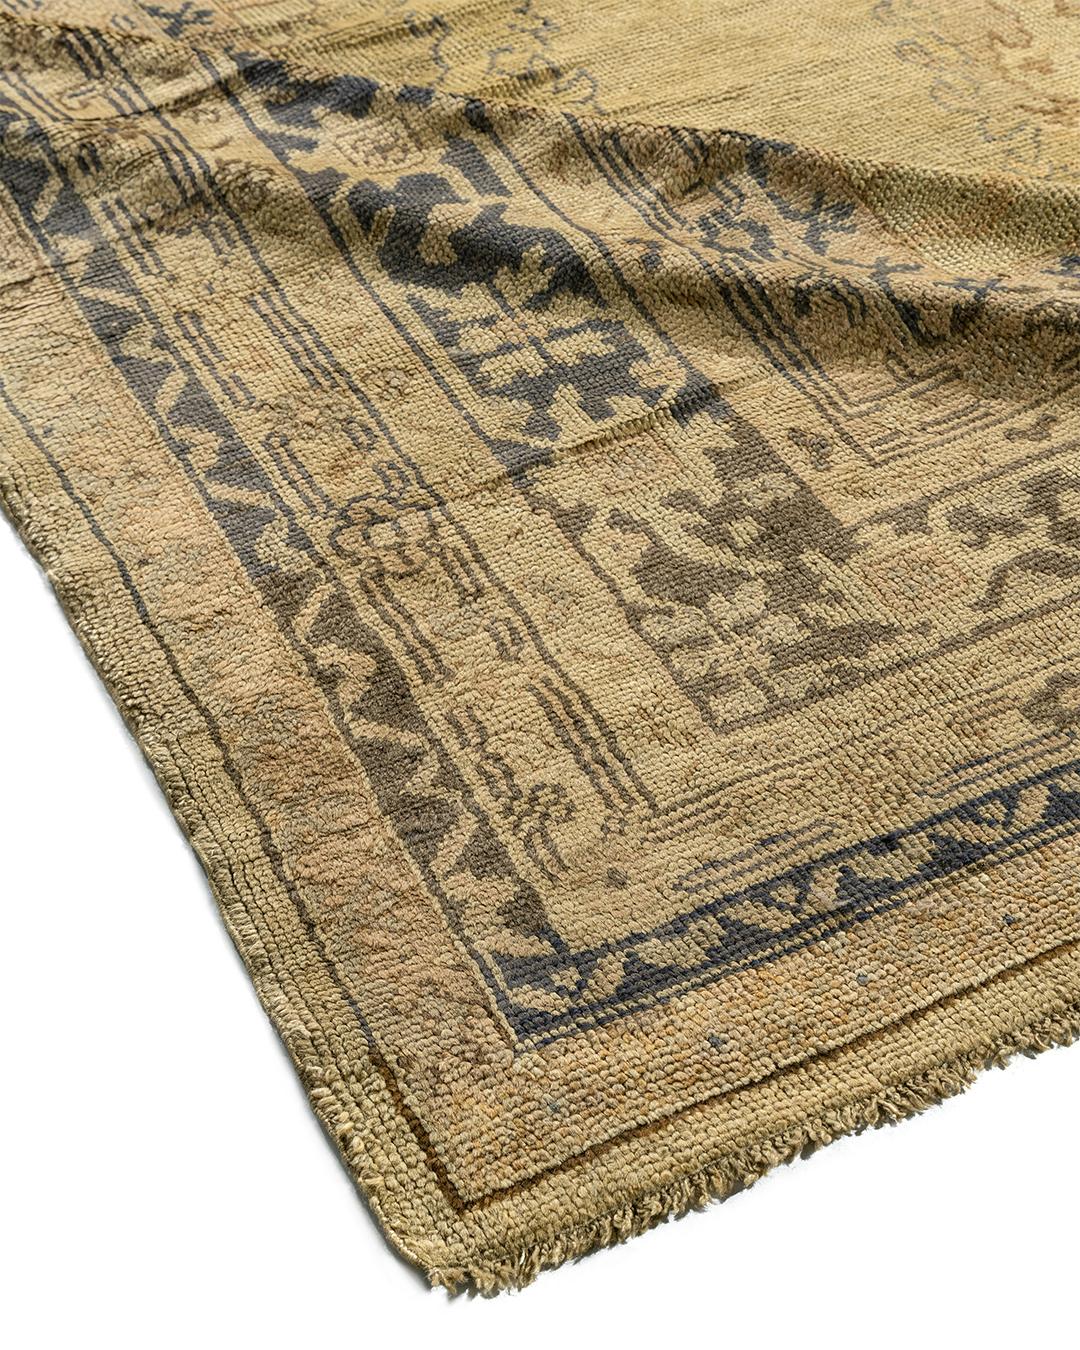 Les Oushaks antiques sont connus pour leurs palettes douces combinées à un dessin excentrique. Le tissage relativement grossier, ici sur une base de laine, signifie que les vignes et les branches sont pliées et cassées plutôt que de couler